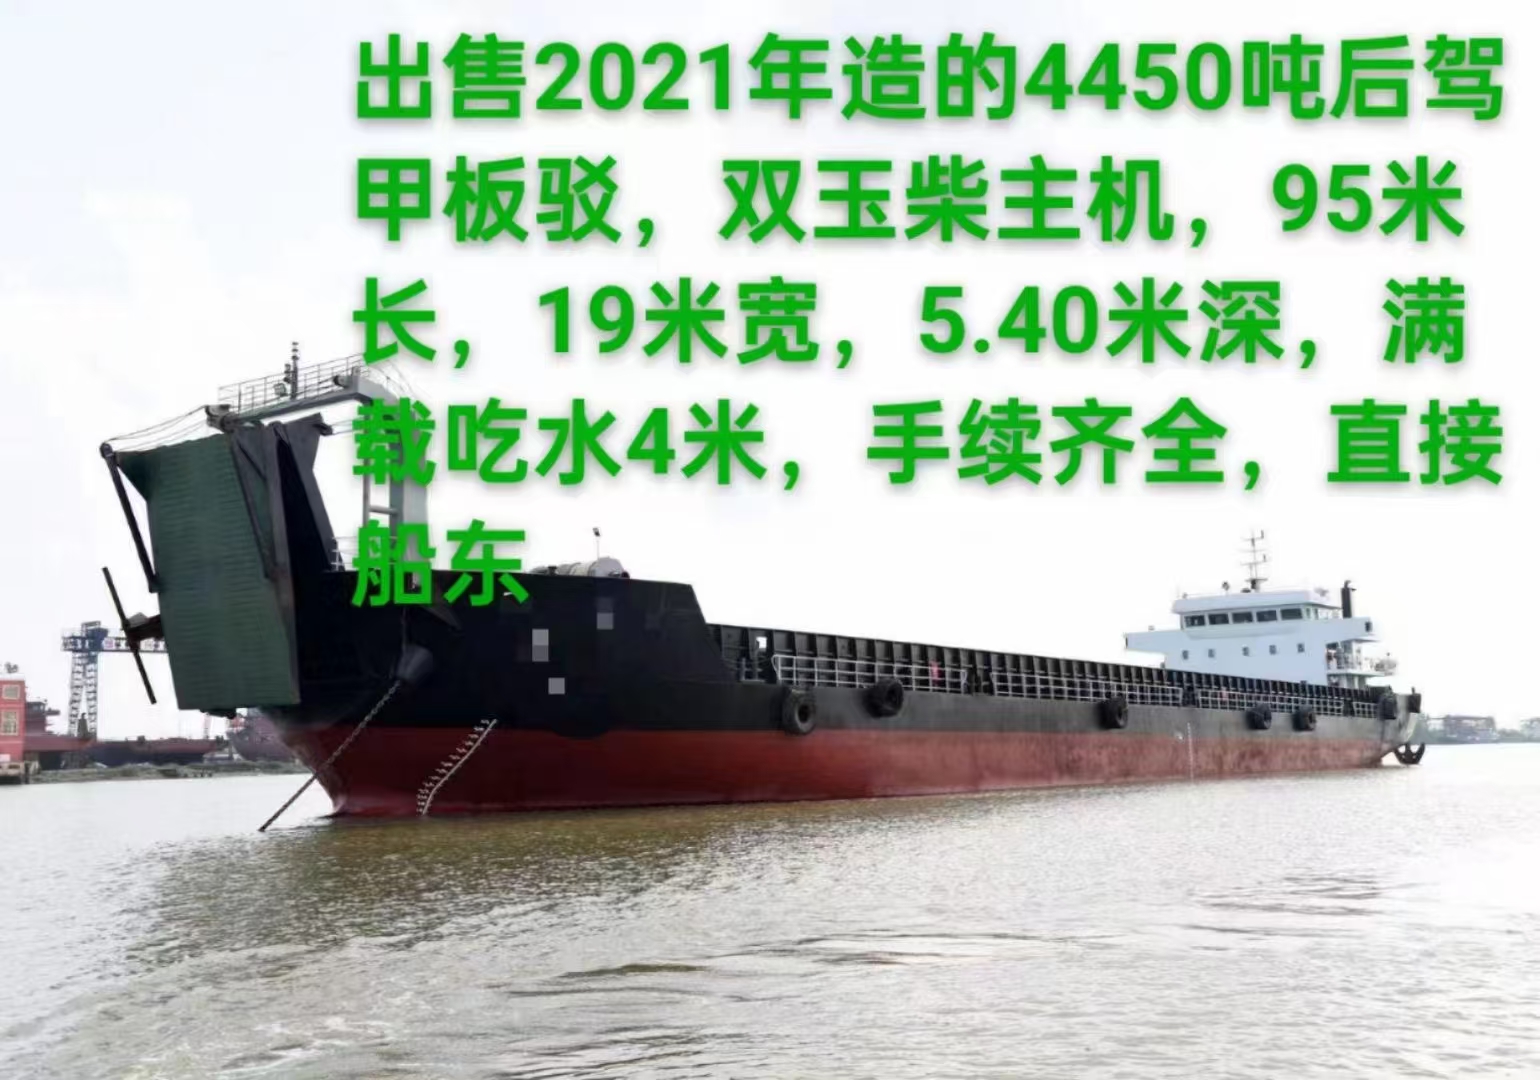 出售2021年造的4450吨后驾甲板驳